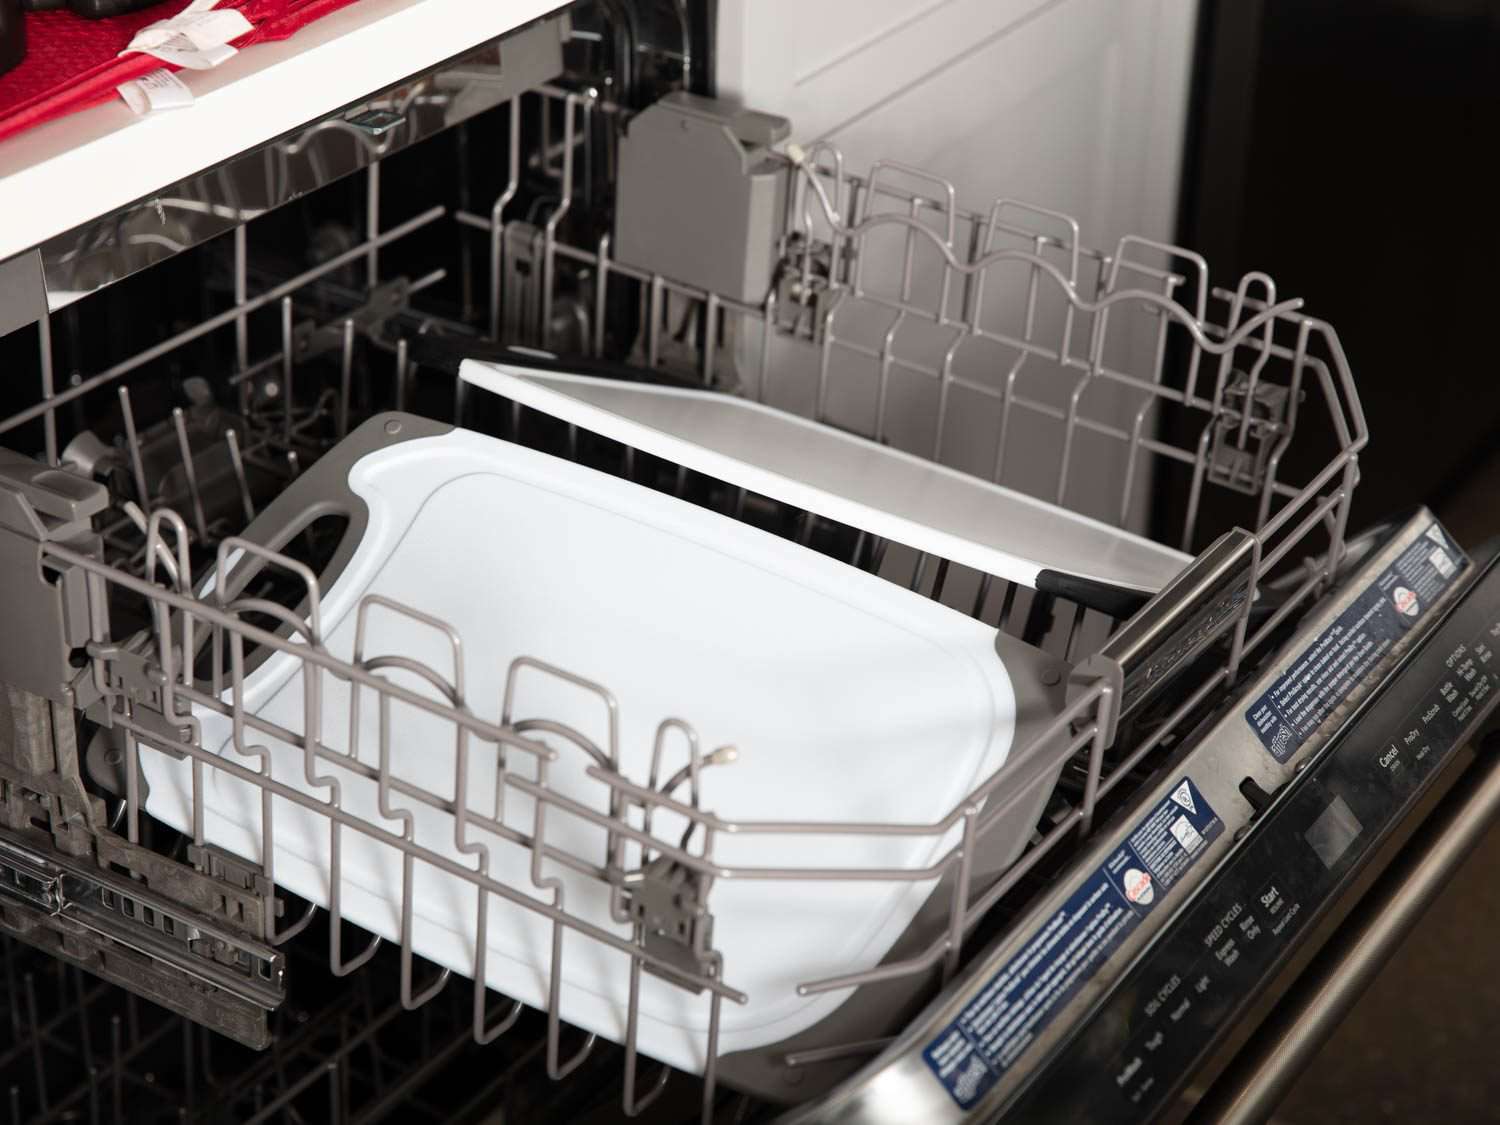 把切菜板放进洗碗机检验了他们声称的洗碗机安全。